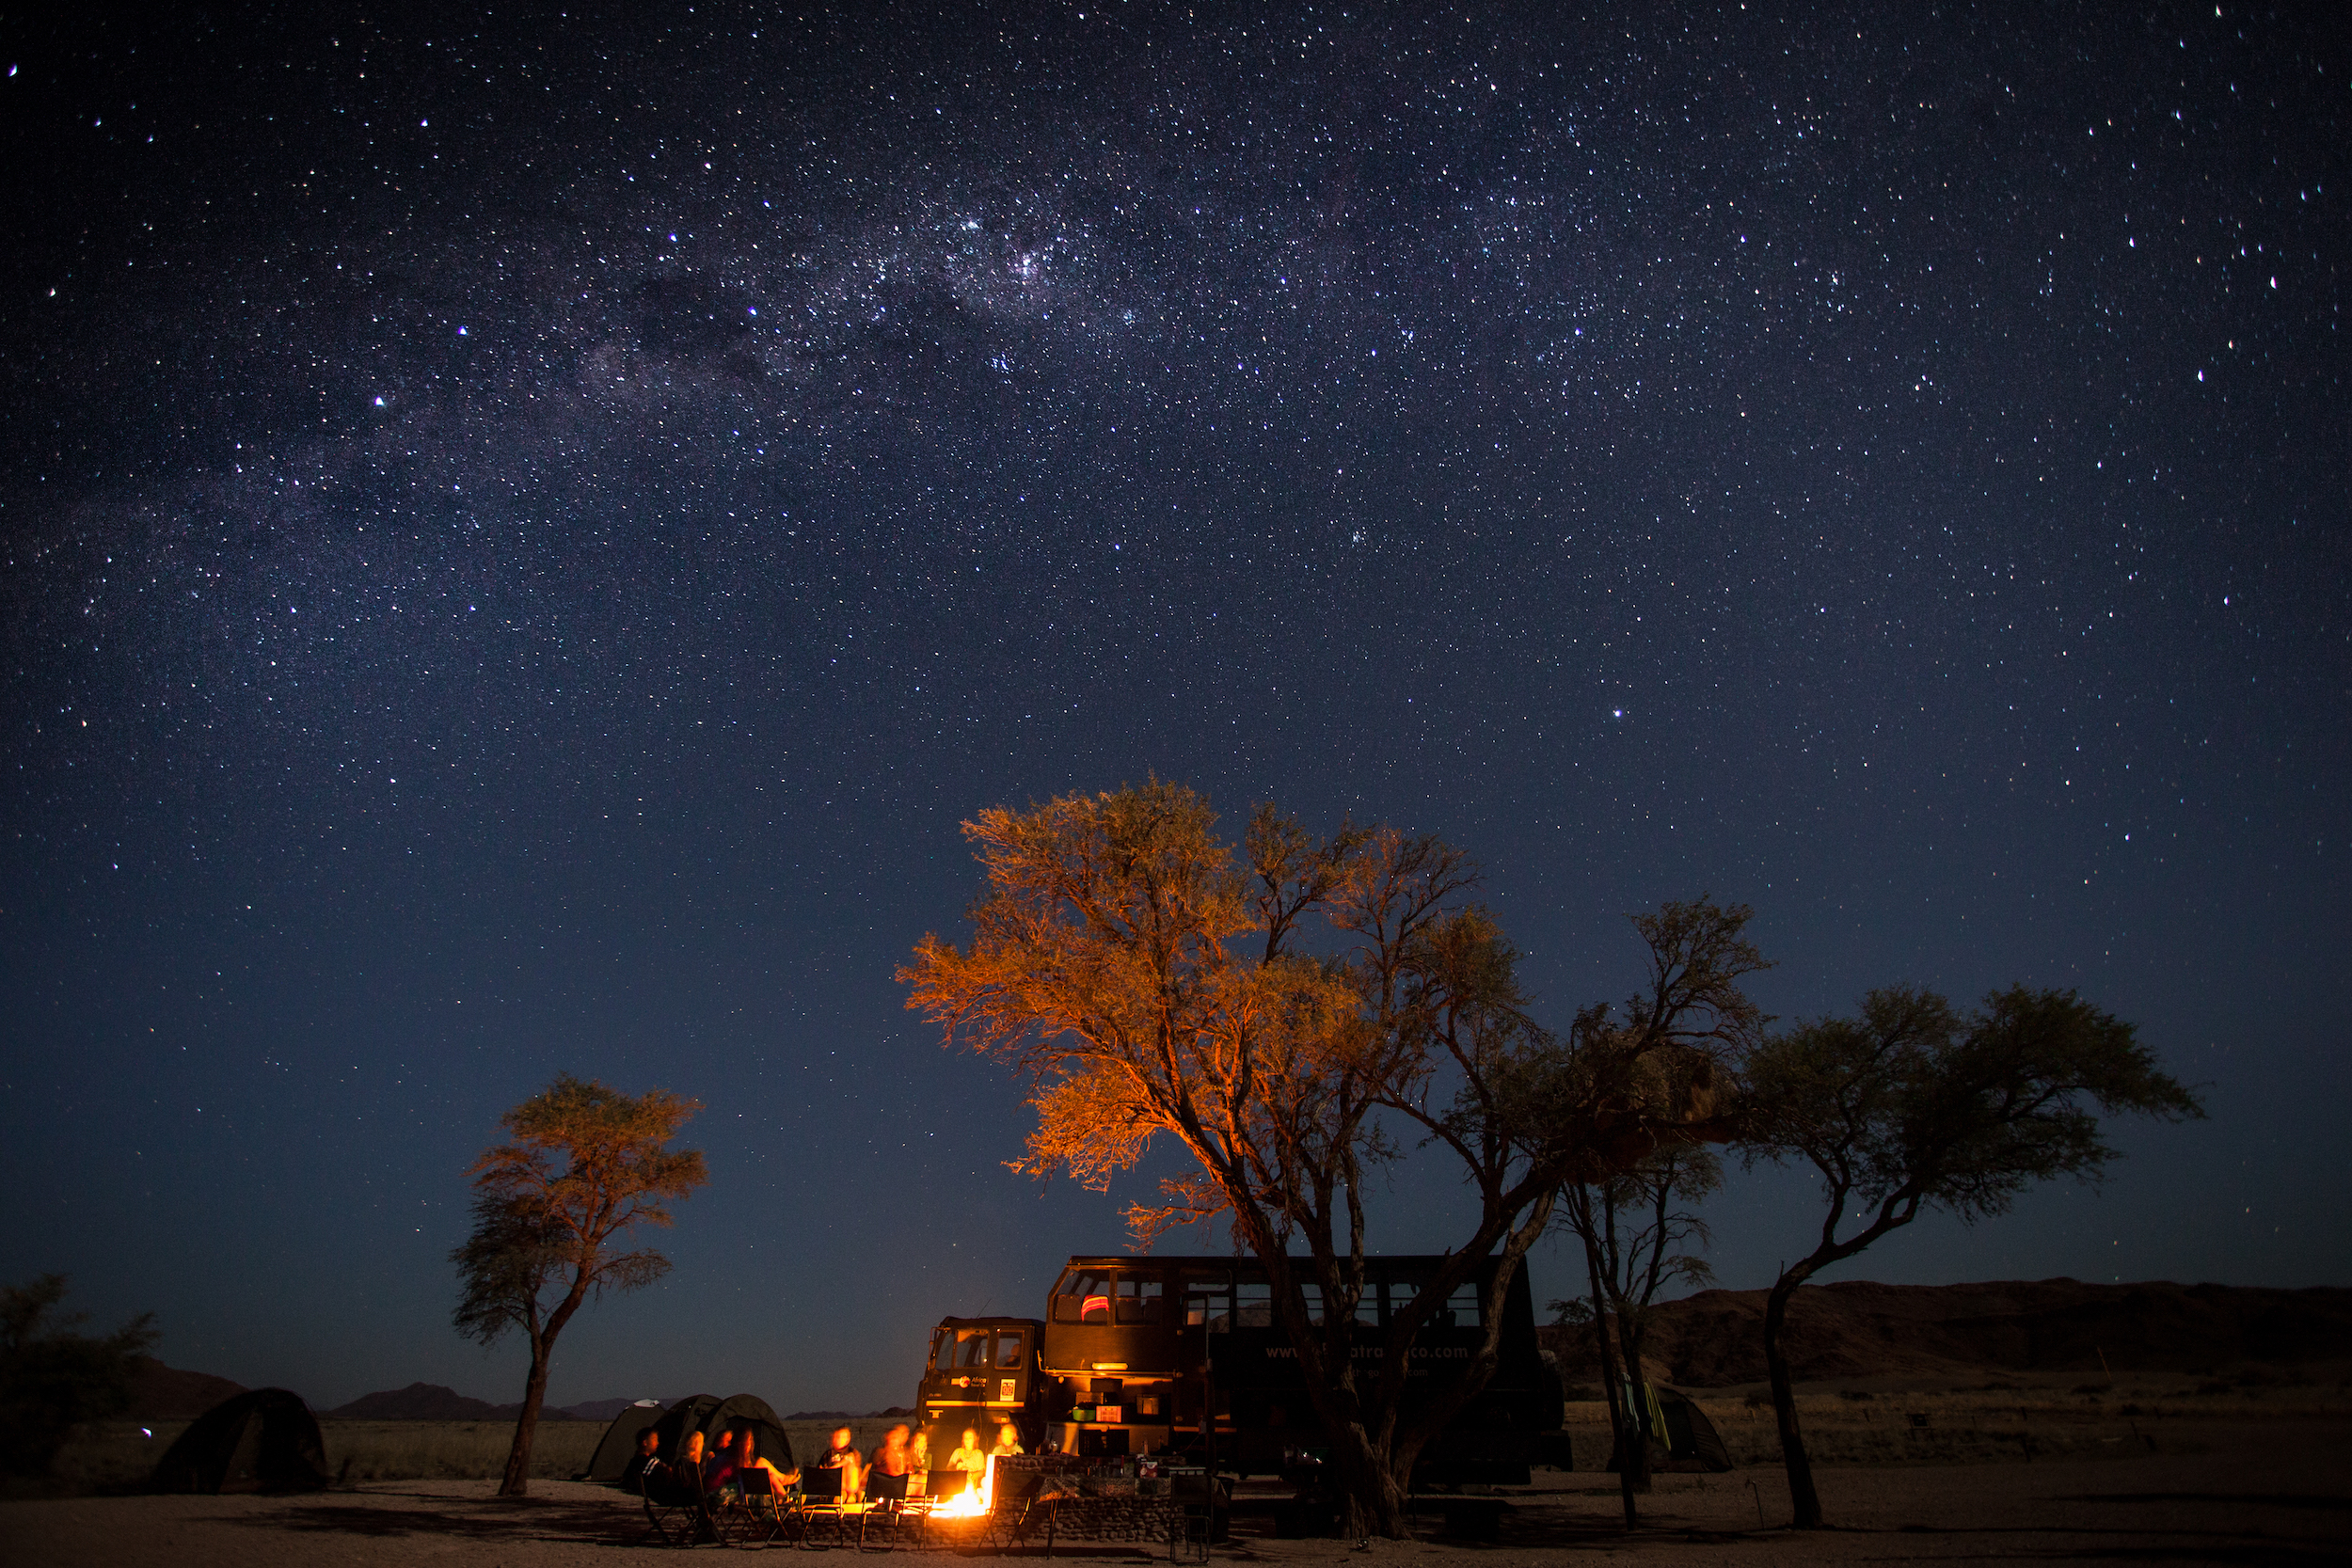 Übernachten unter dem Sternenhimmel in der Wüste Afrikas ist einfach einzigartig